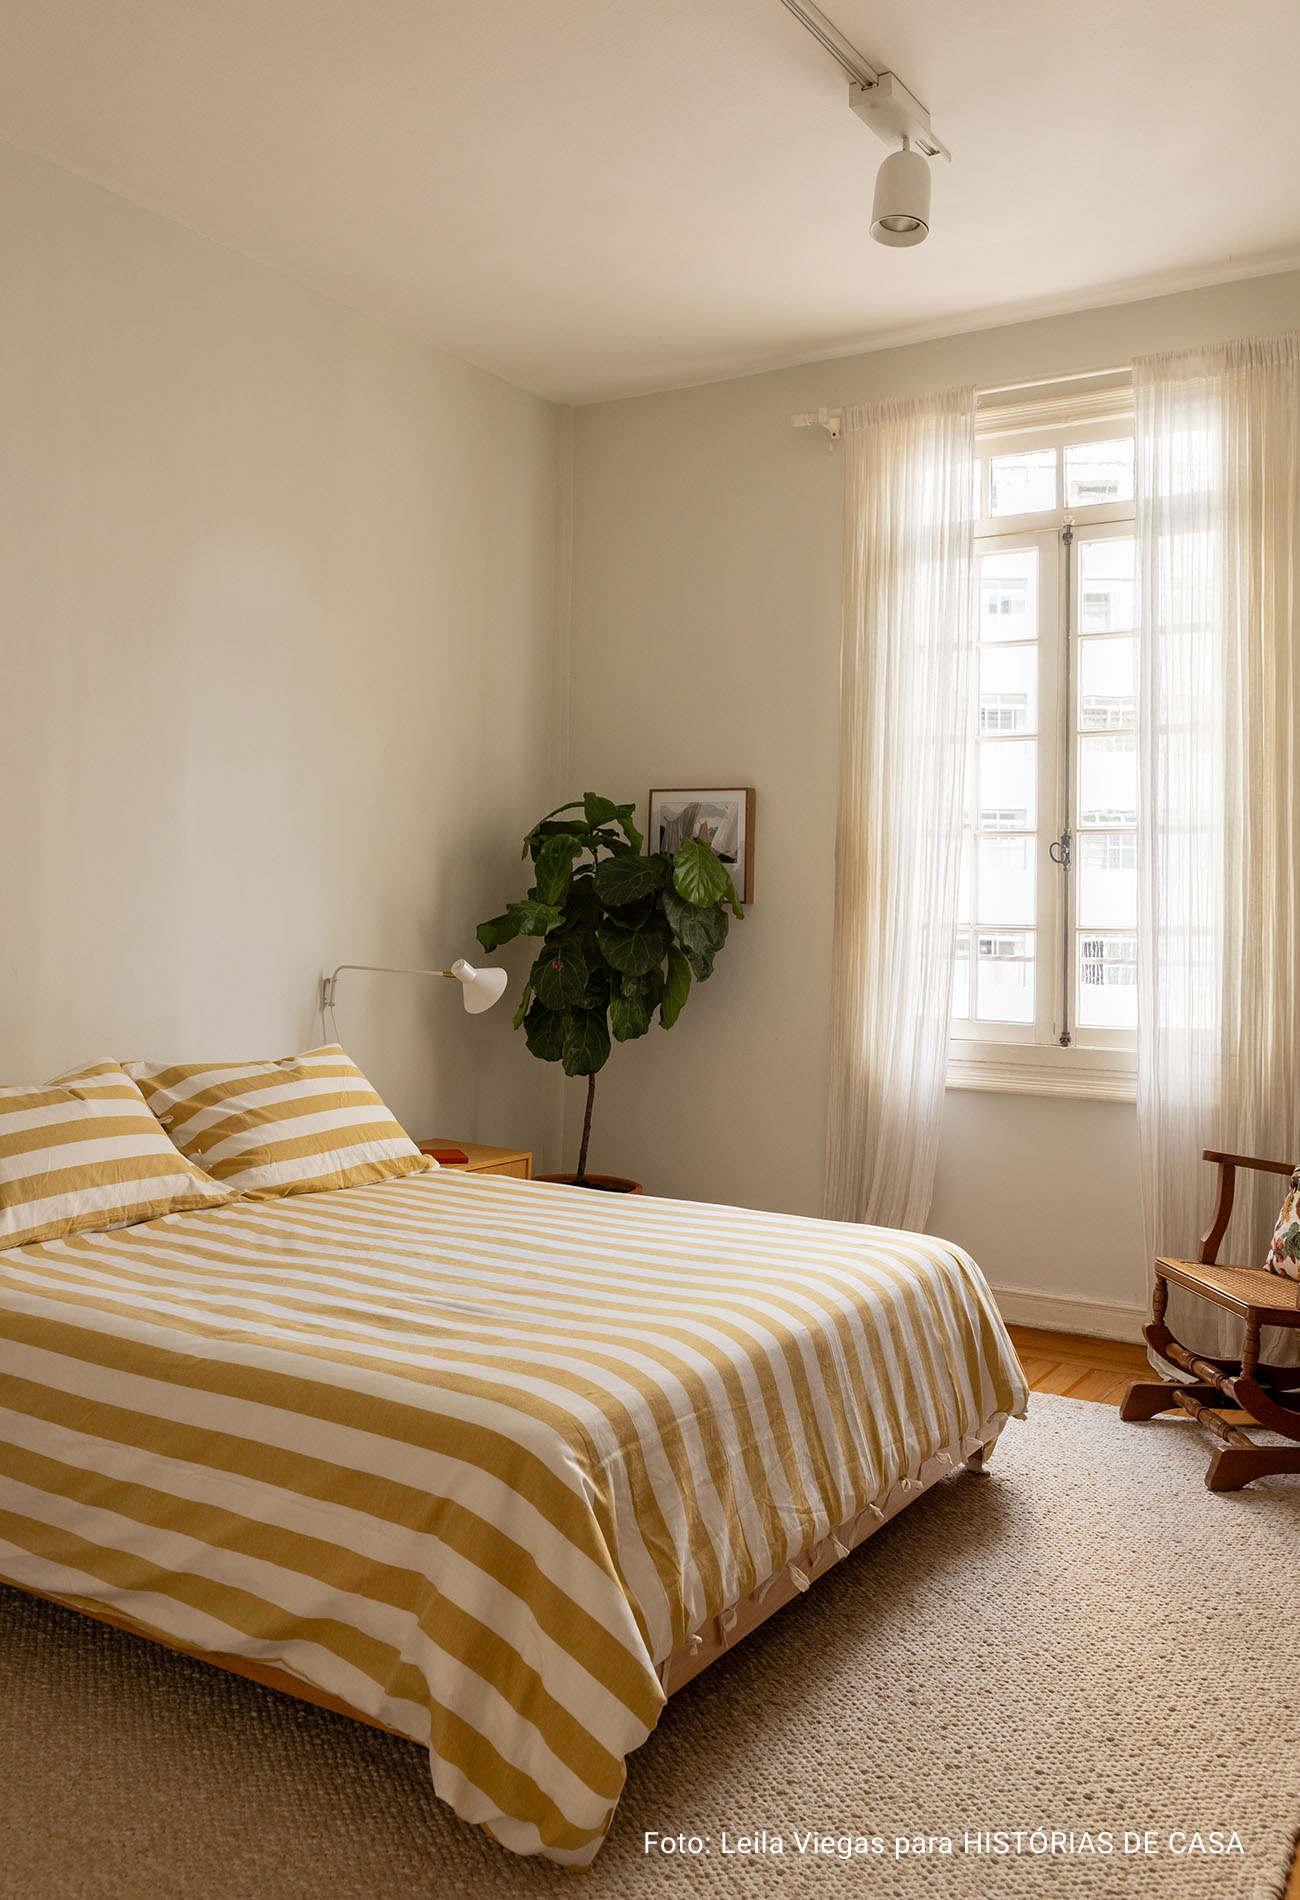 Apartamento antigo com sala integrada, luz natural e decoracão em cores neutras.